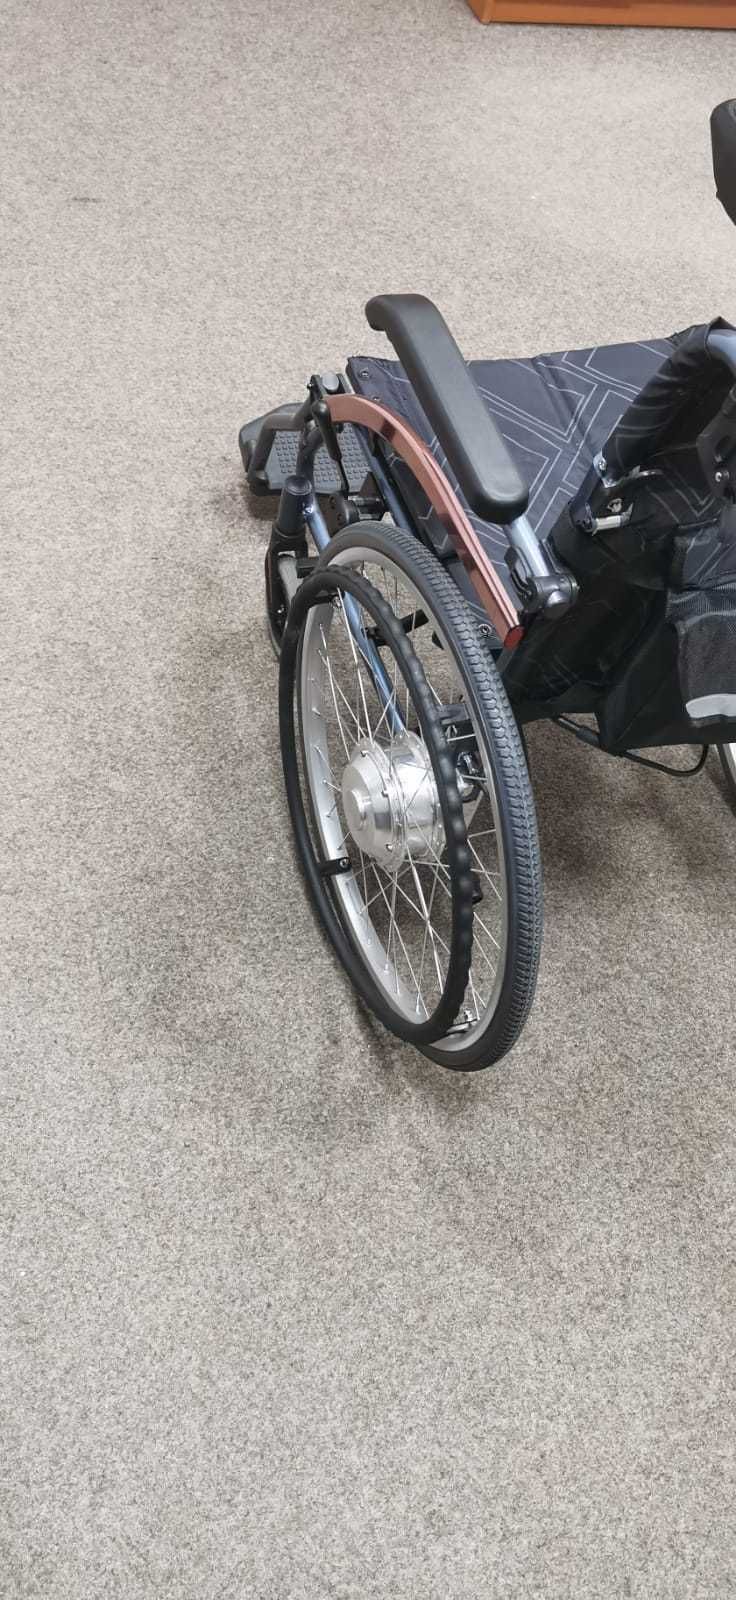 Fotoliu rulant (Scaun cu rotile) electric persoane cu dezabilitati